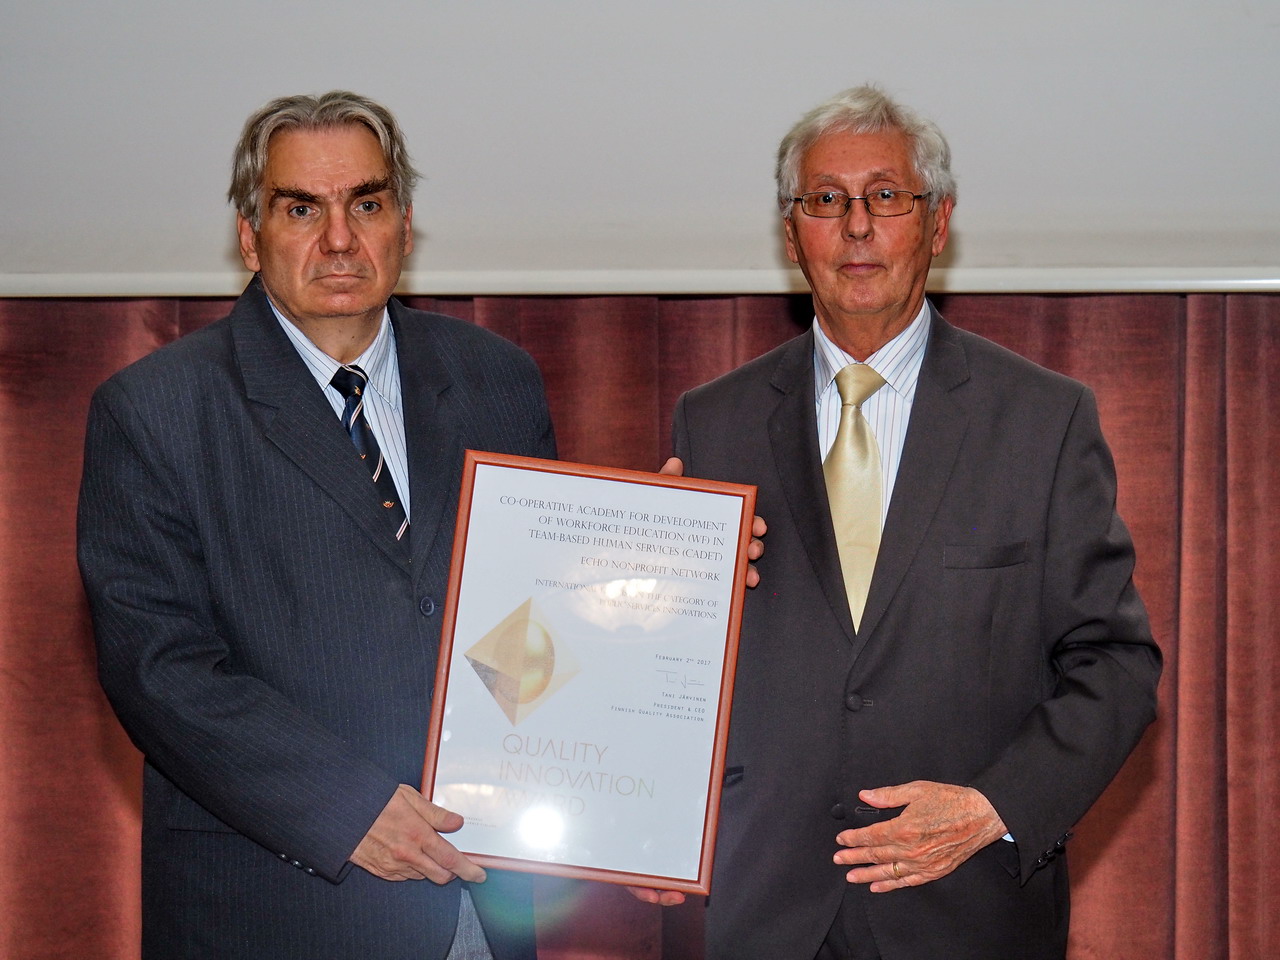 Nemzetközi elismerő oklevelet kapott a Kooperatív Akadémia